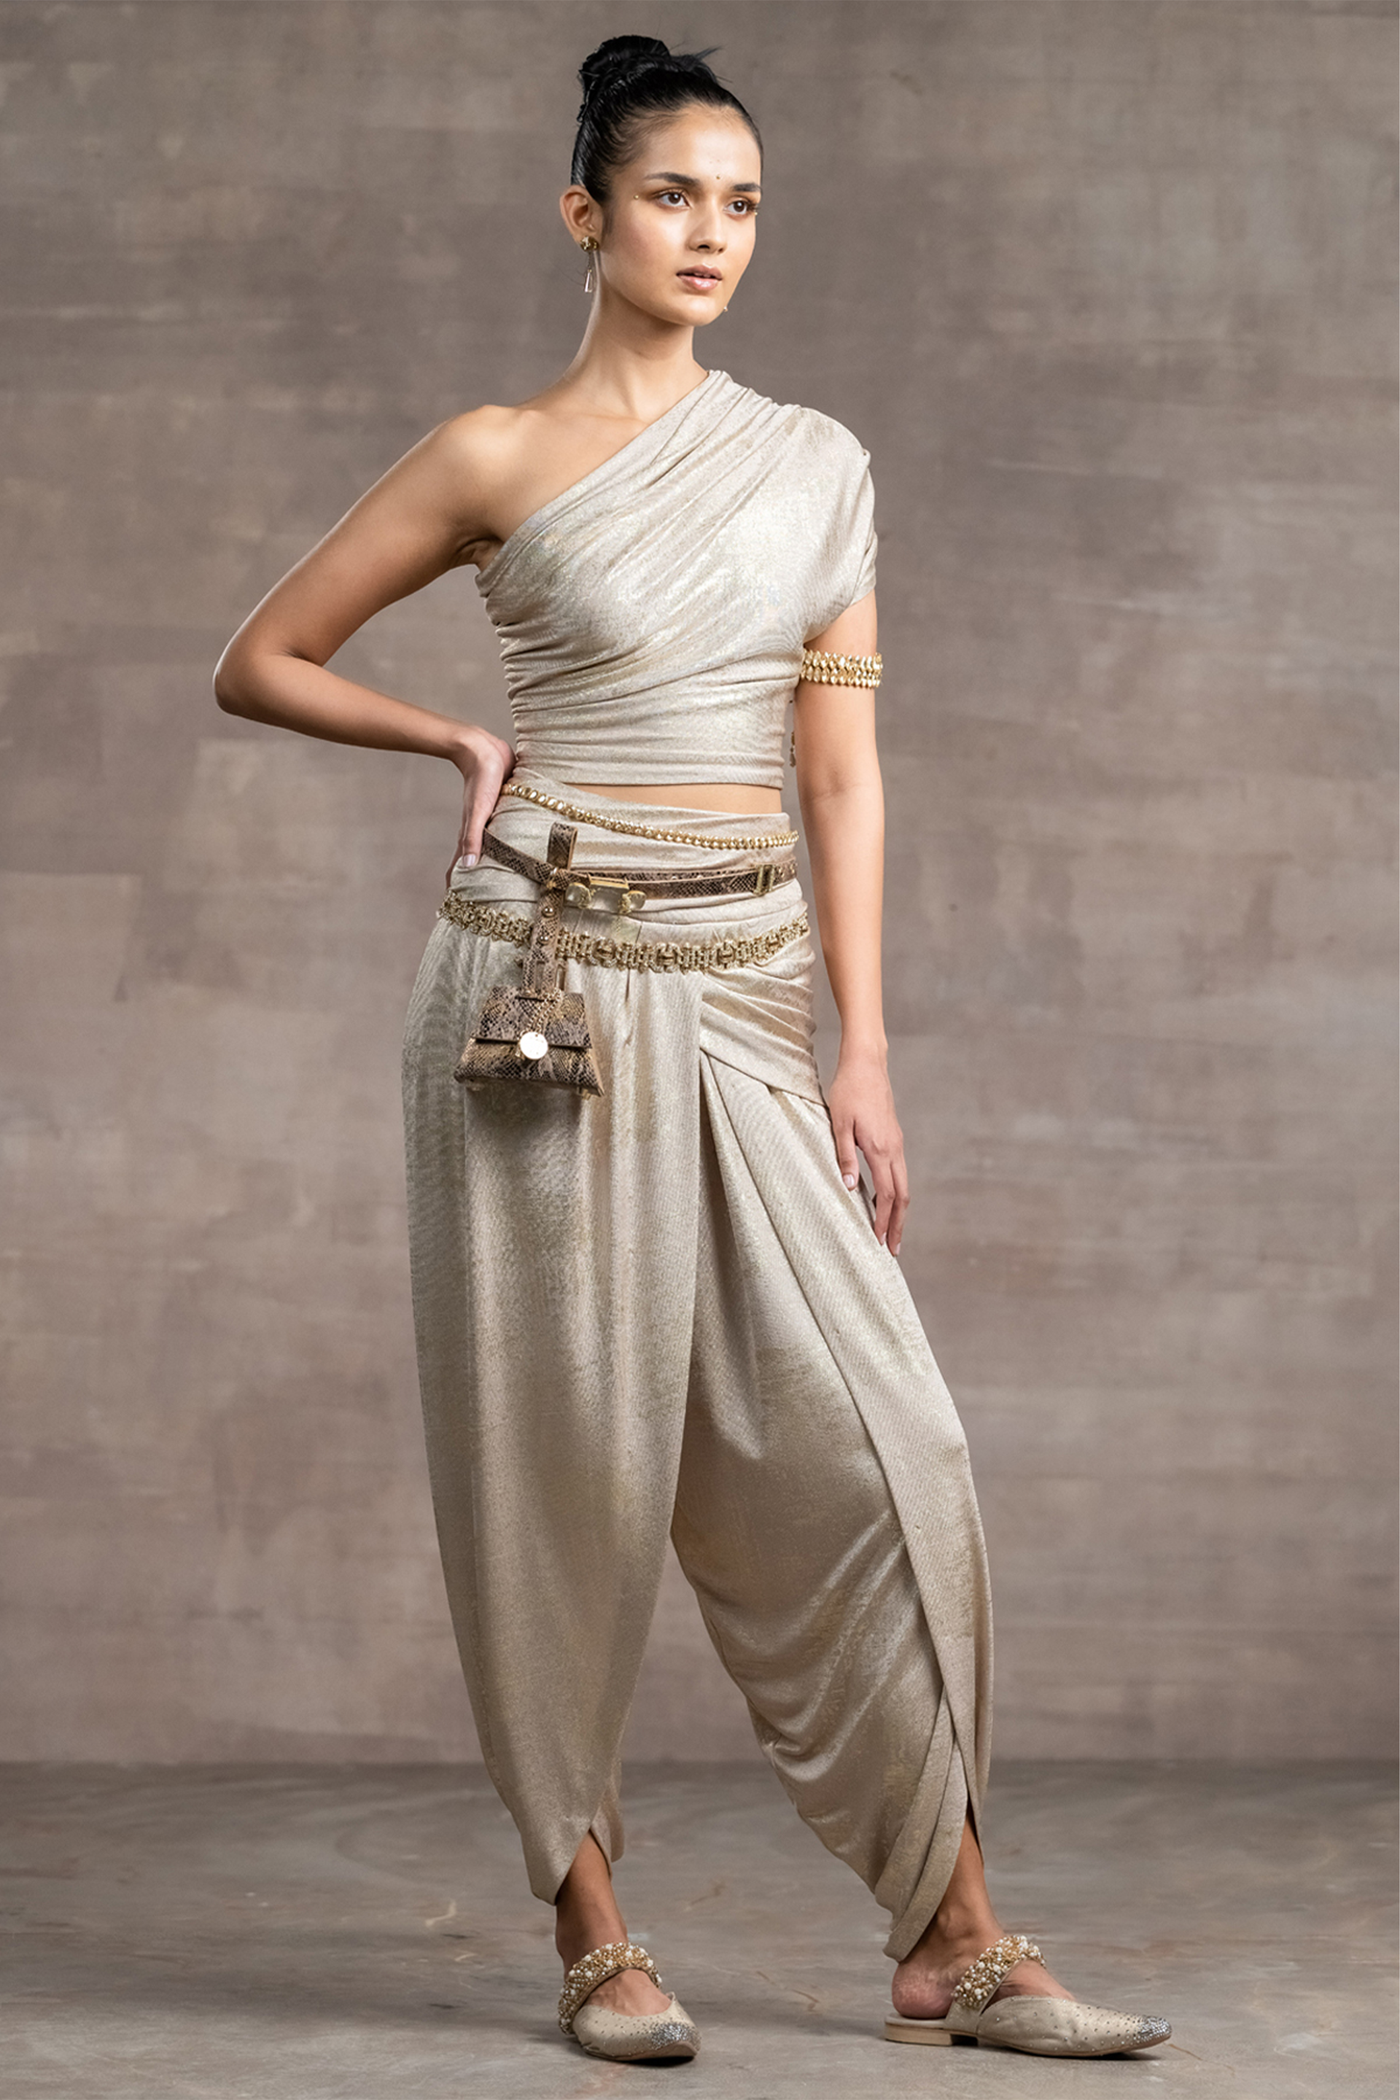 Tarun tahiliani Draped Dhoti Pants And Top gold indian designer wear bridal wedding online shopping melange singapore